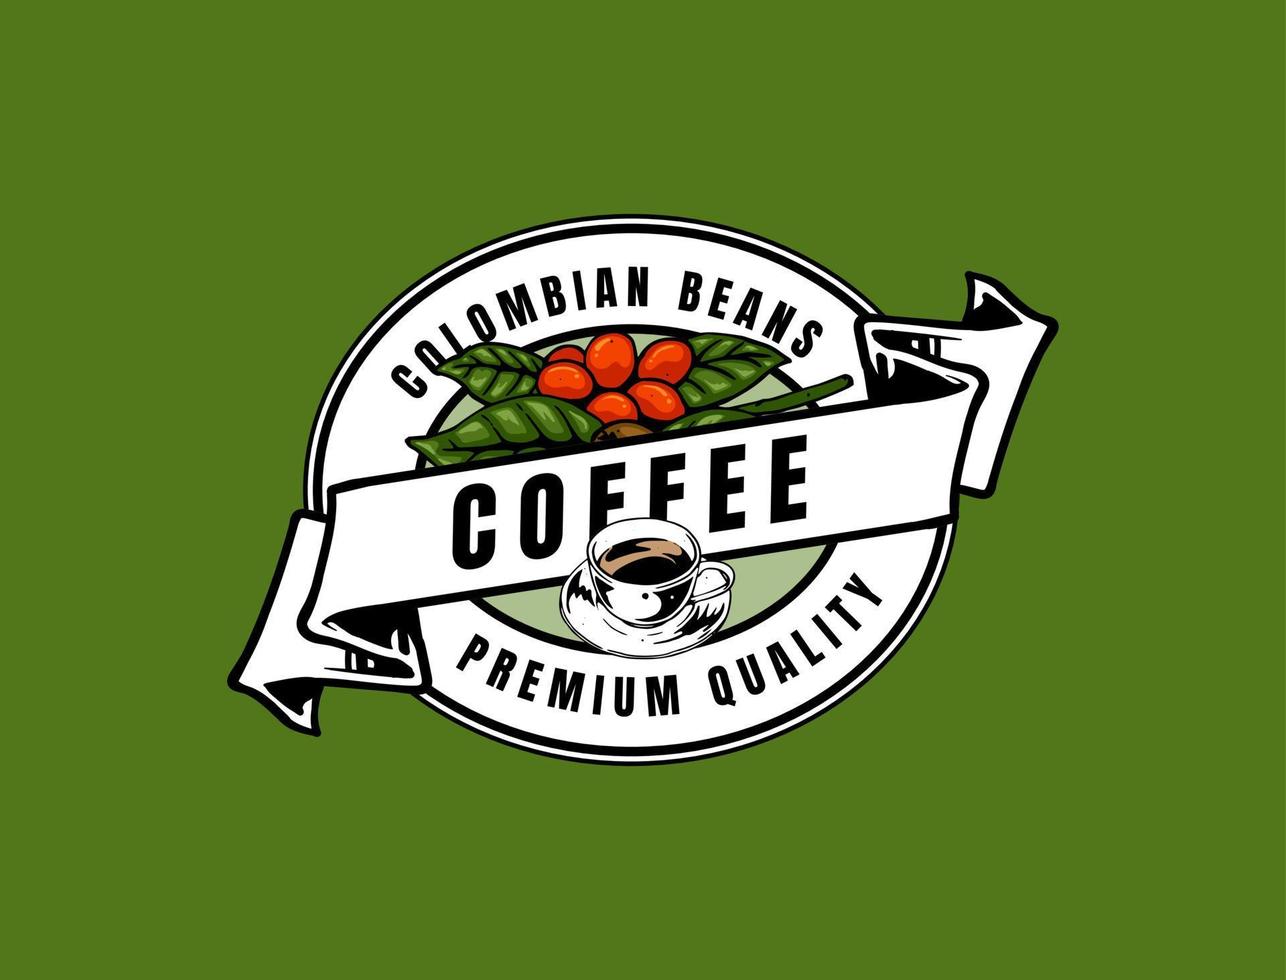 disegno del logo del caffè vettore